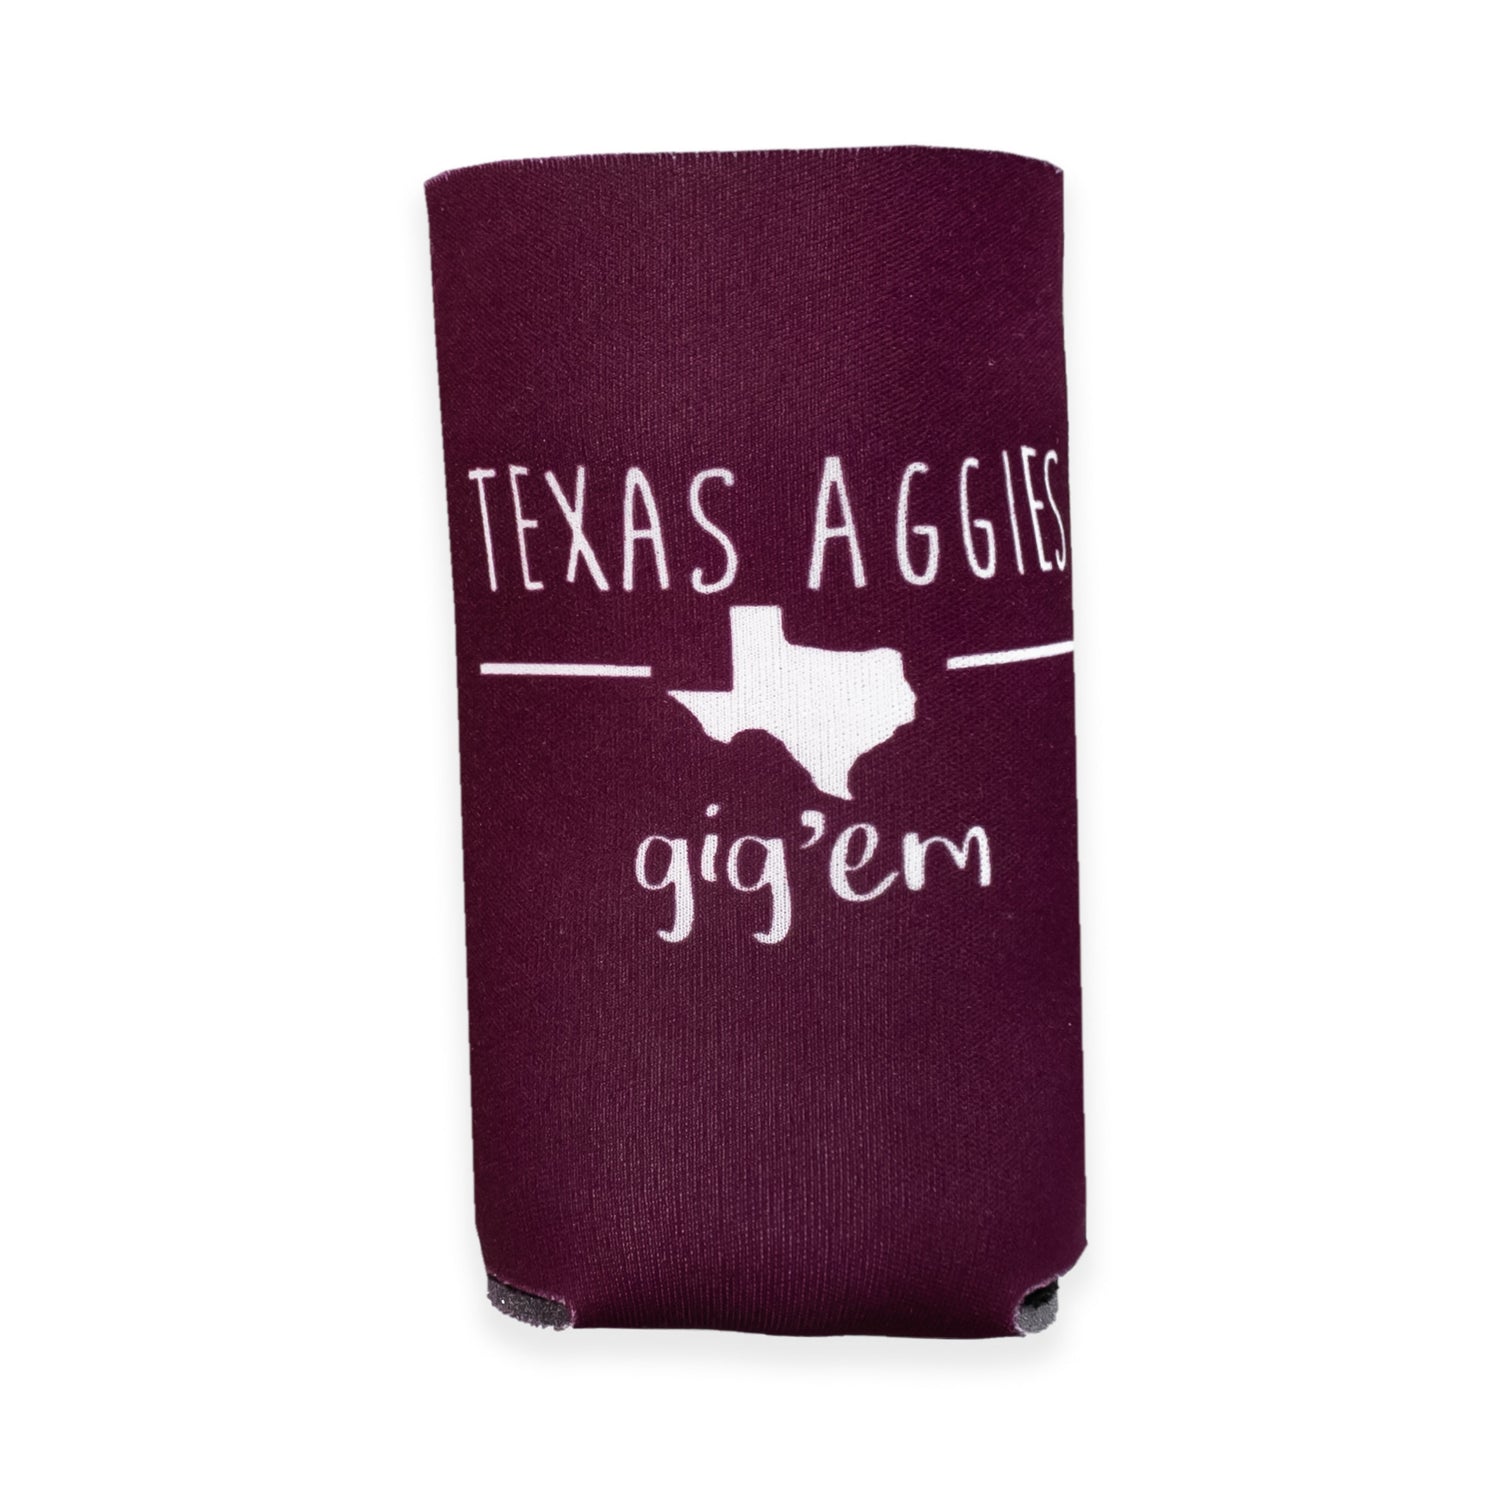 Texas Aggies Stix Slim Koozie